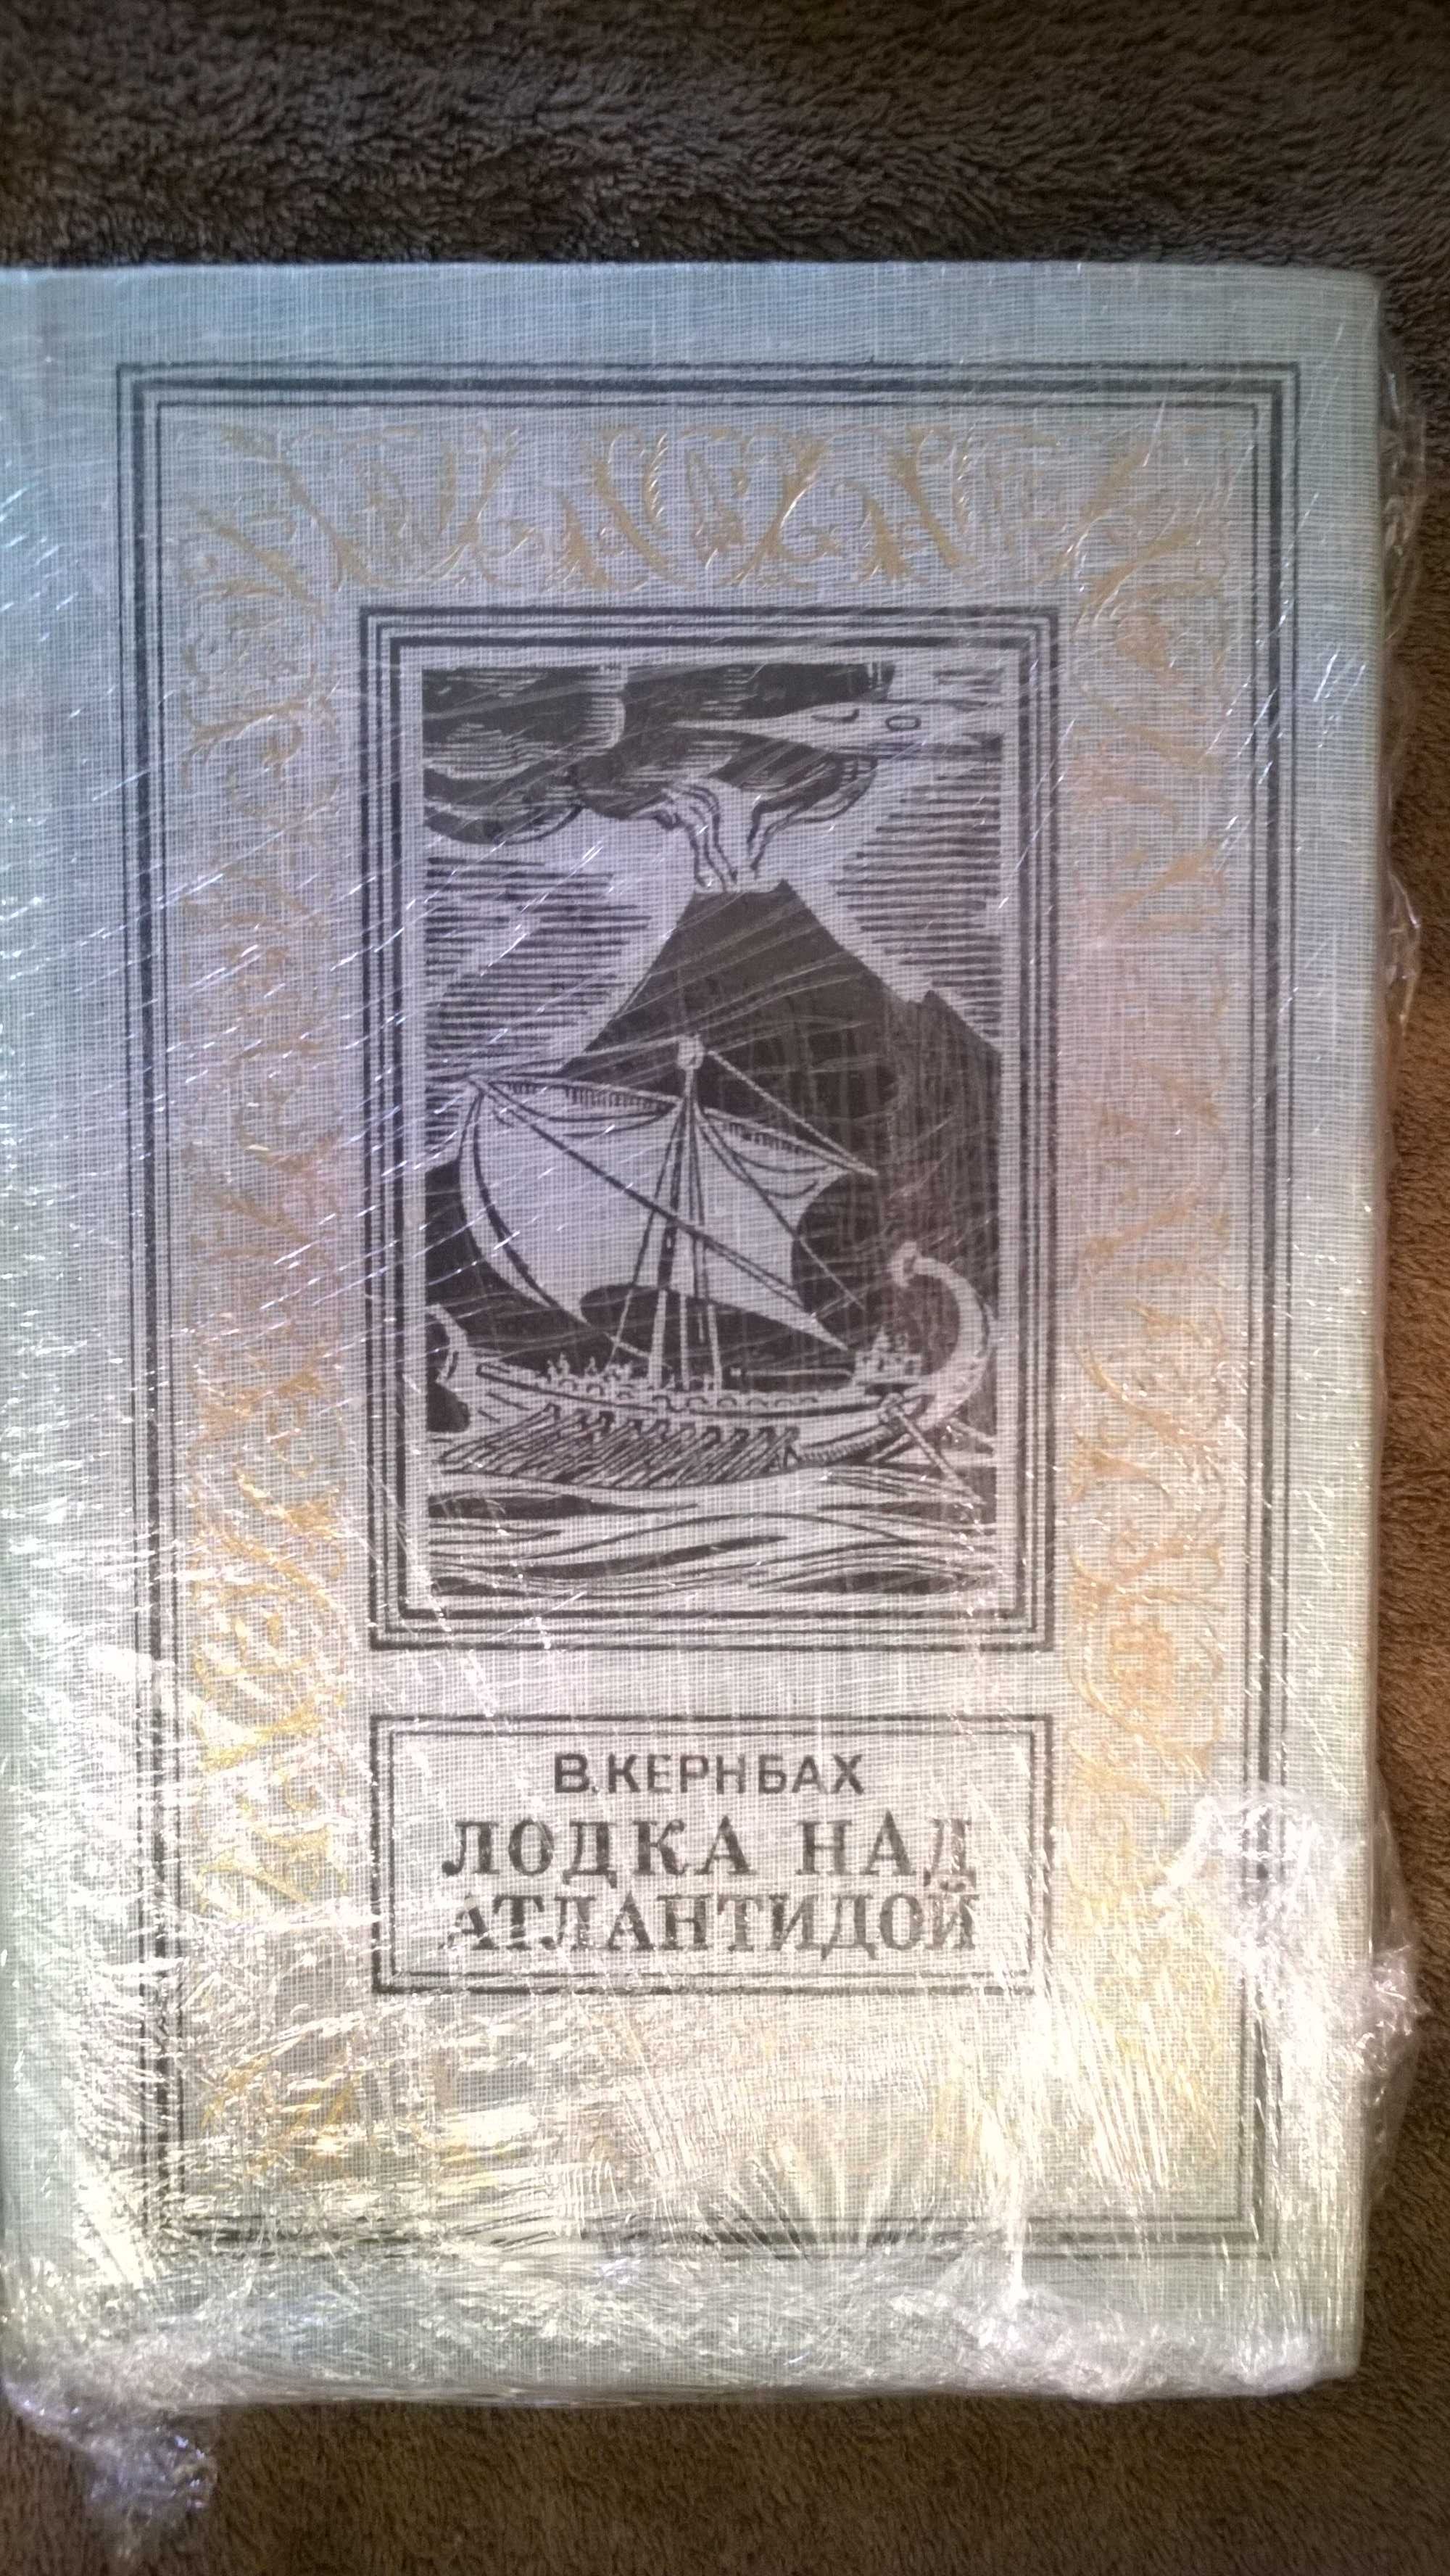 В. Кернбах, А. Днепров, Н. Трублаини. Книги из серии БПНФ (РАМКА)